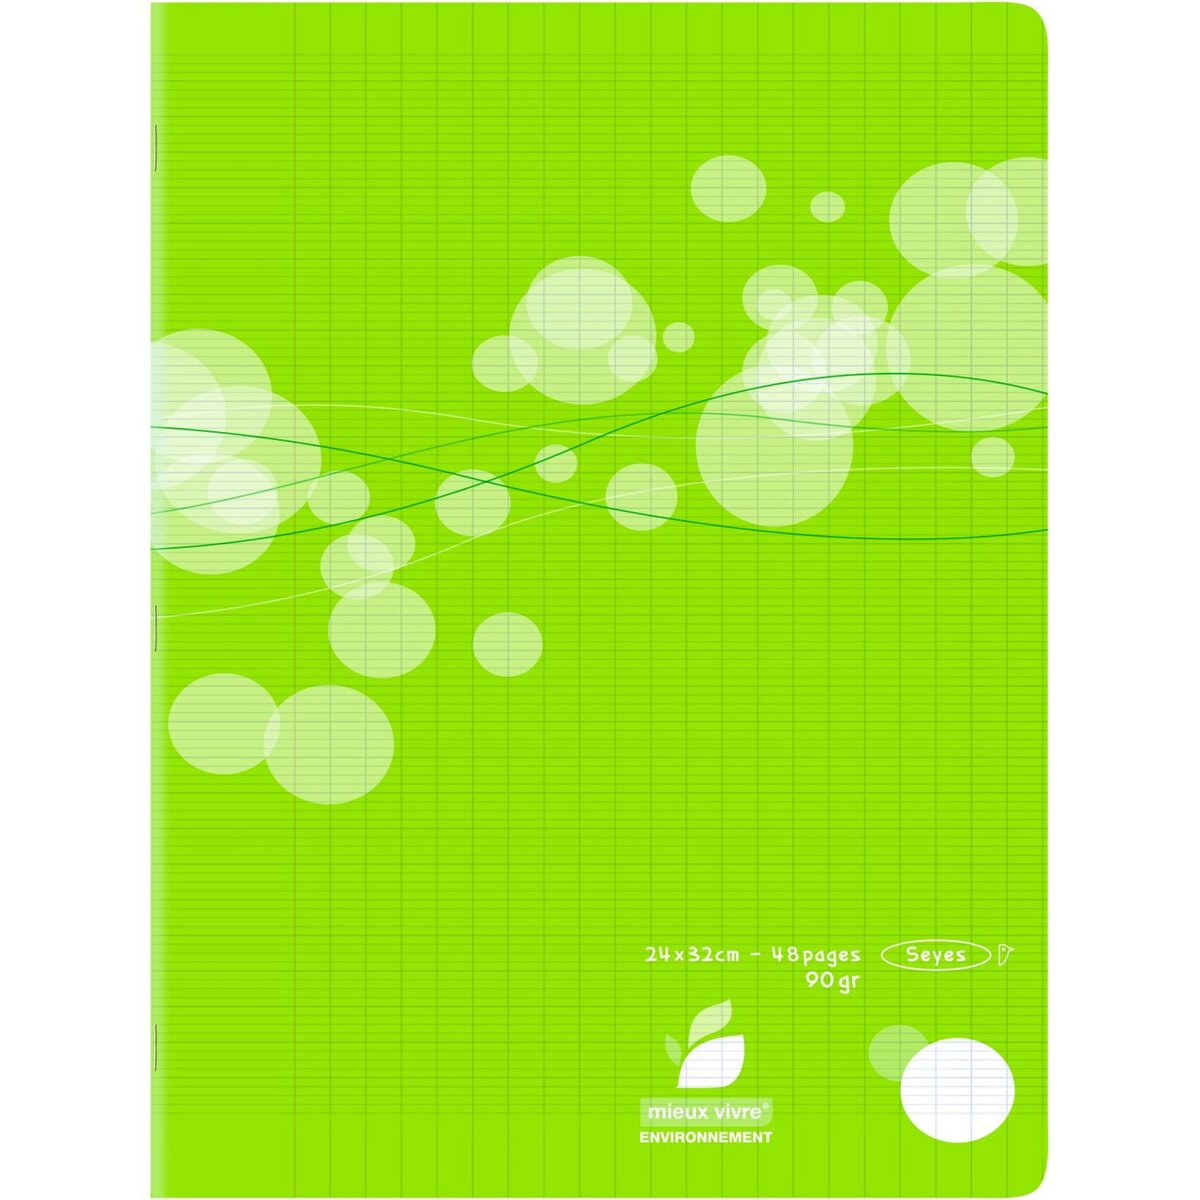 AUCHAN Cahier piqué polypro 24x32cm 48 pages grands carreaux Seyes vert motif ronds